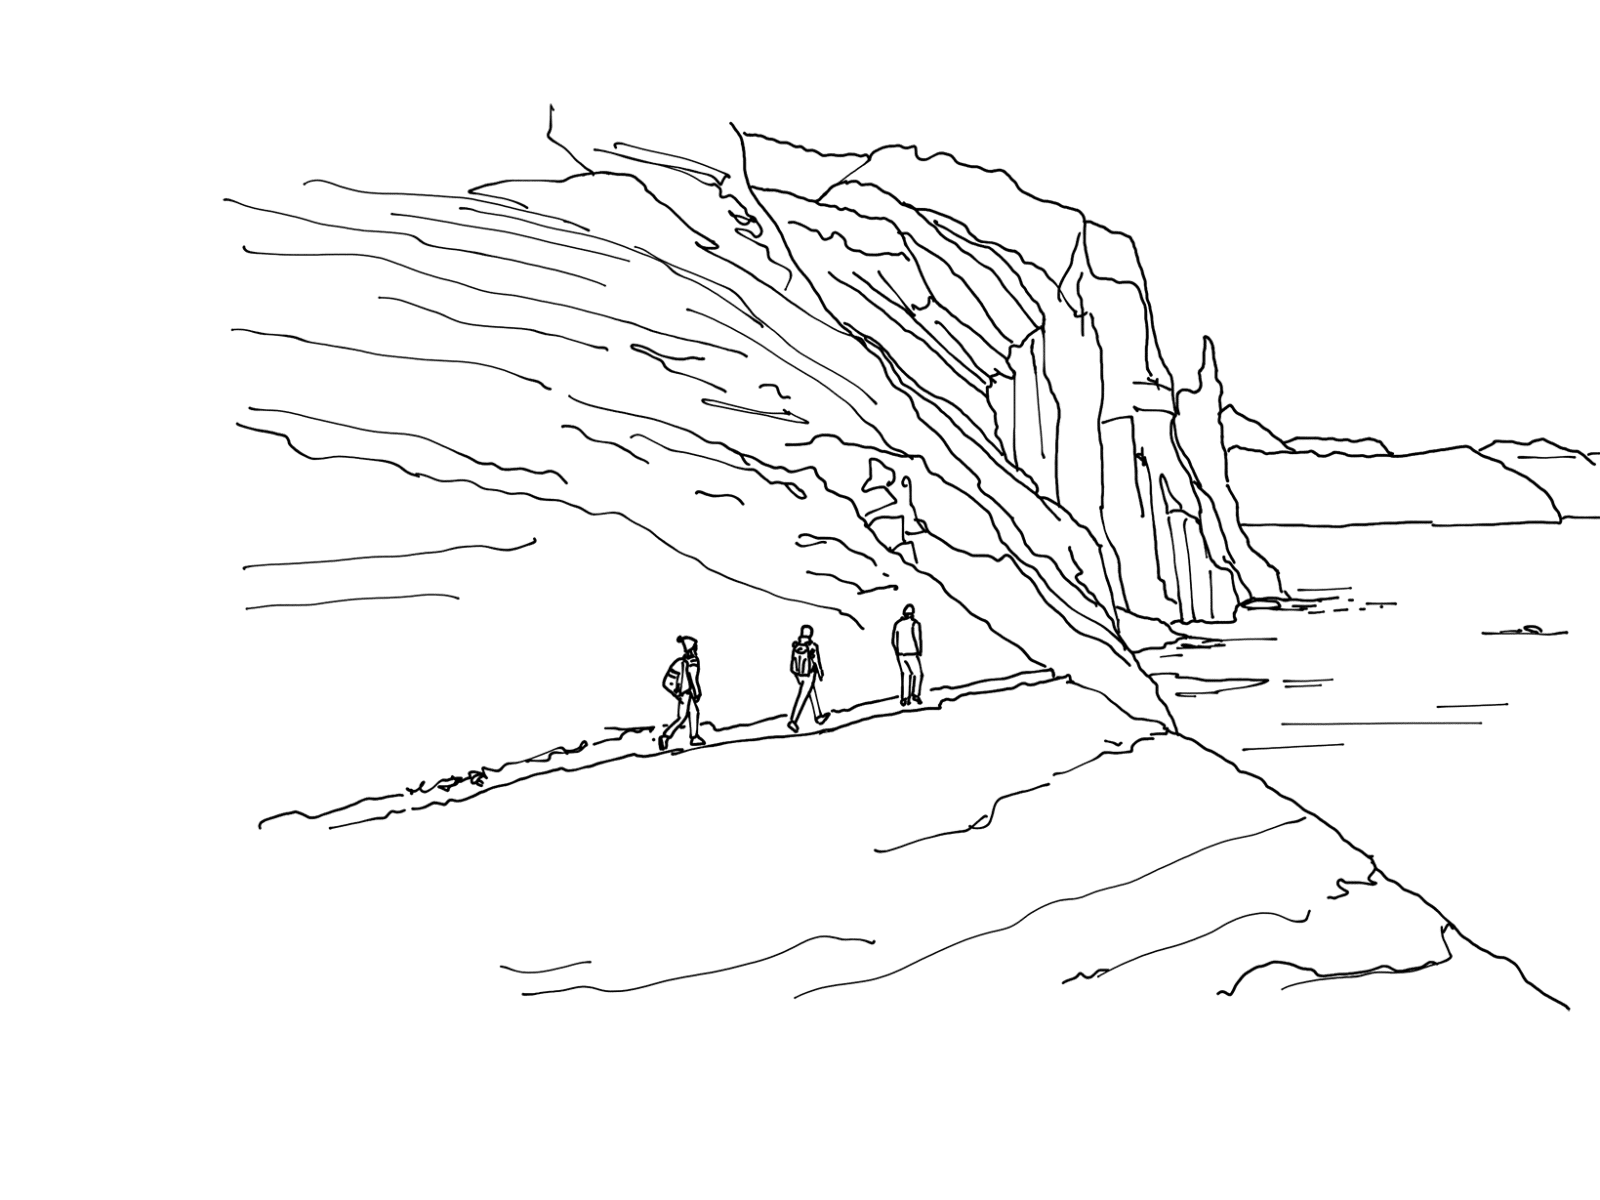 hikers illustration